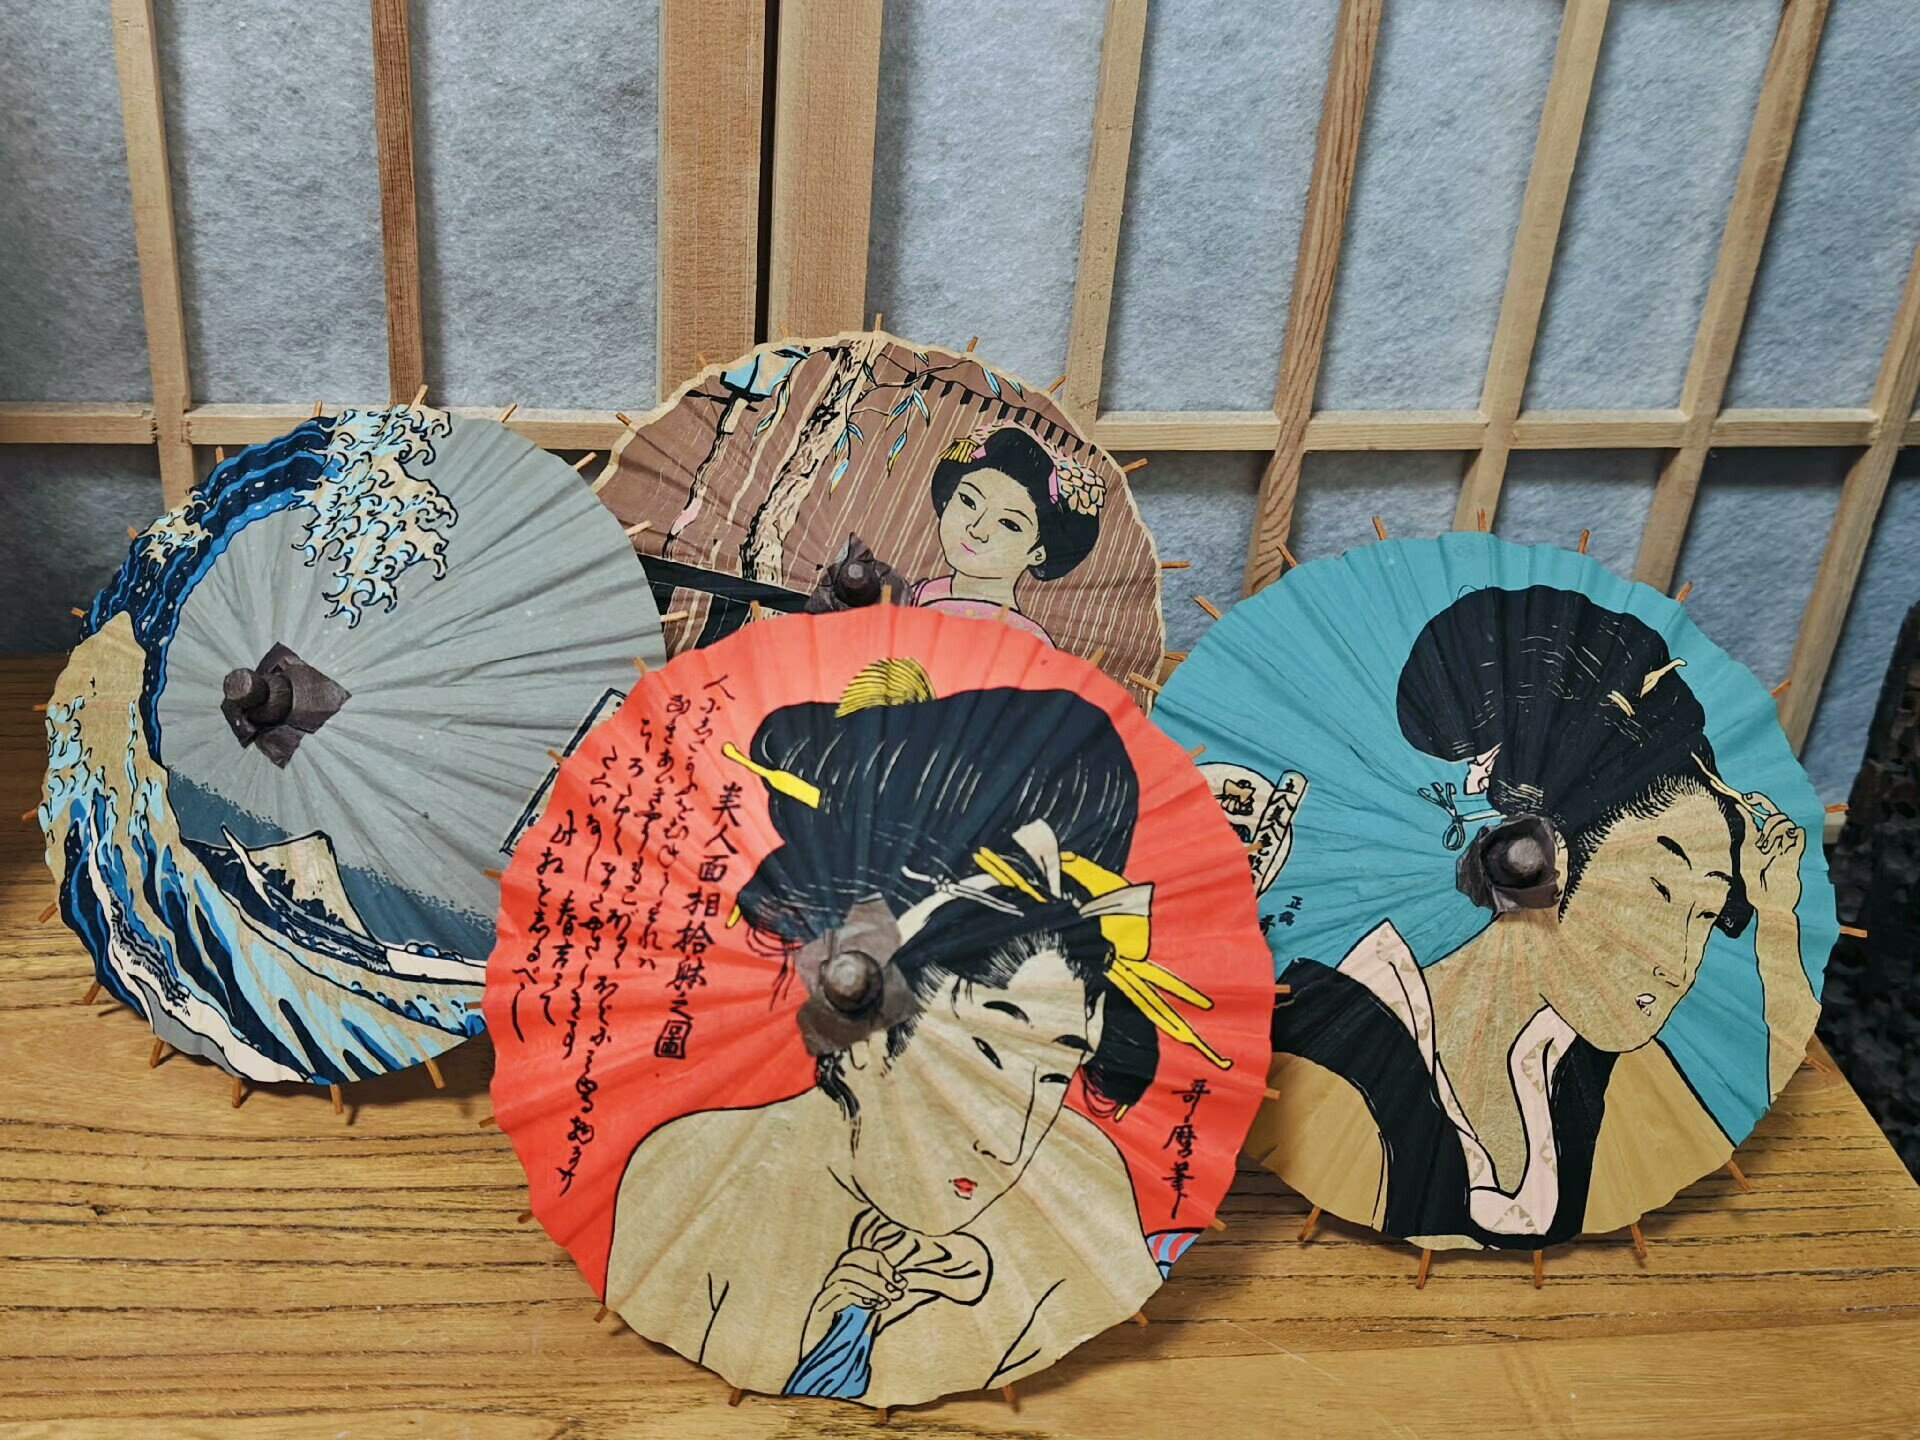 日本油紙傘折紙傘 很適合日式裝修